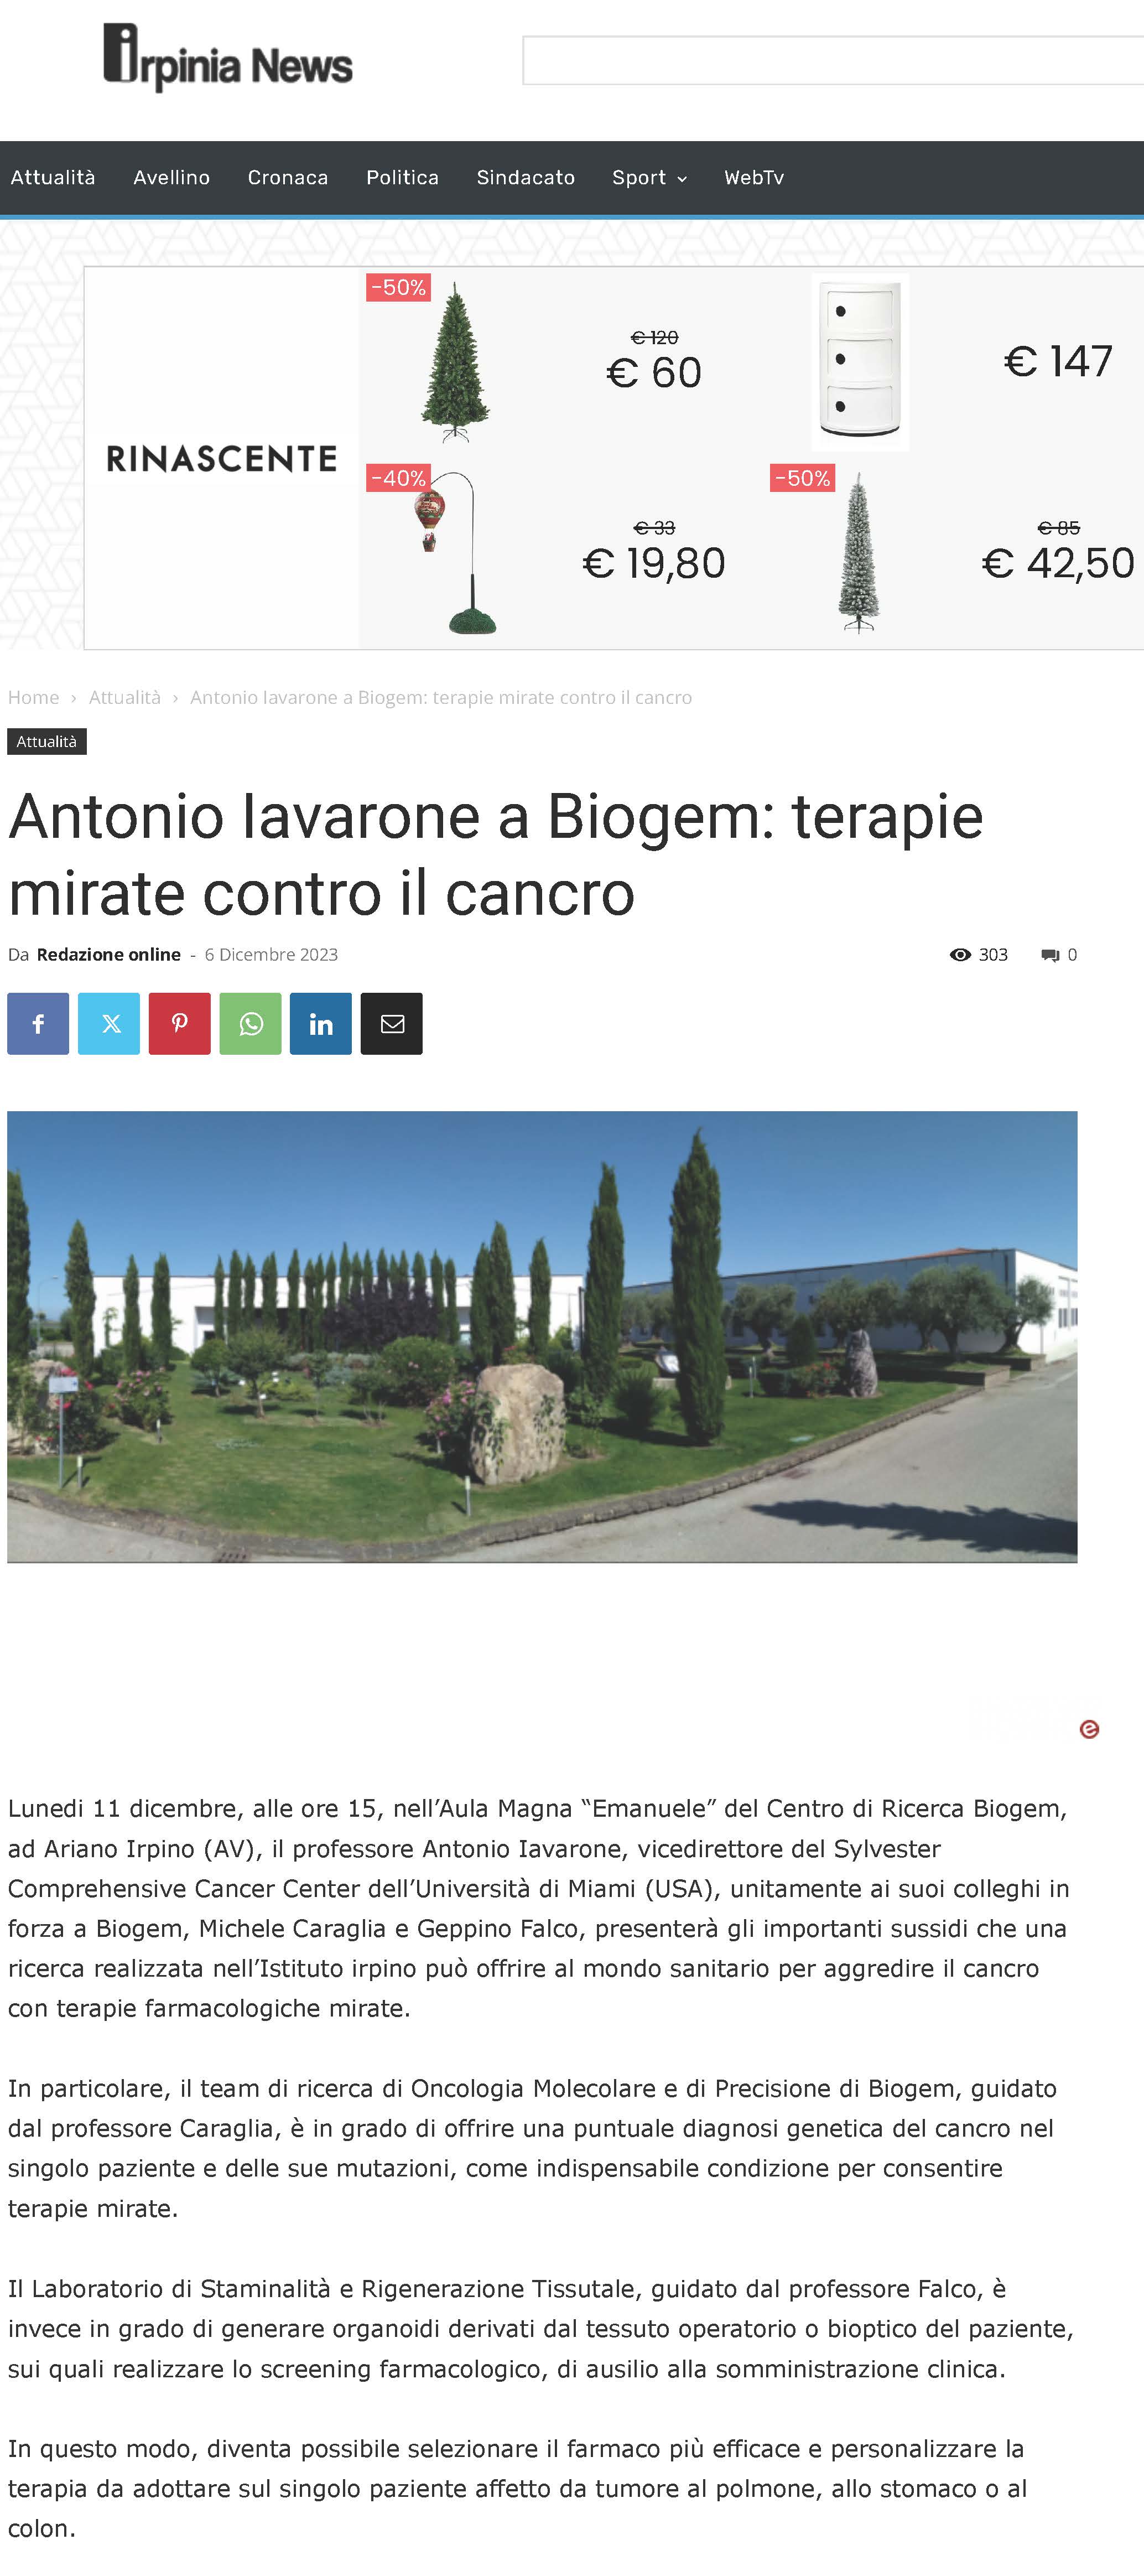 Antonio Iavarone a Biogem: terapie mirate contro il cancro